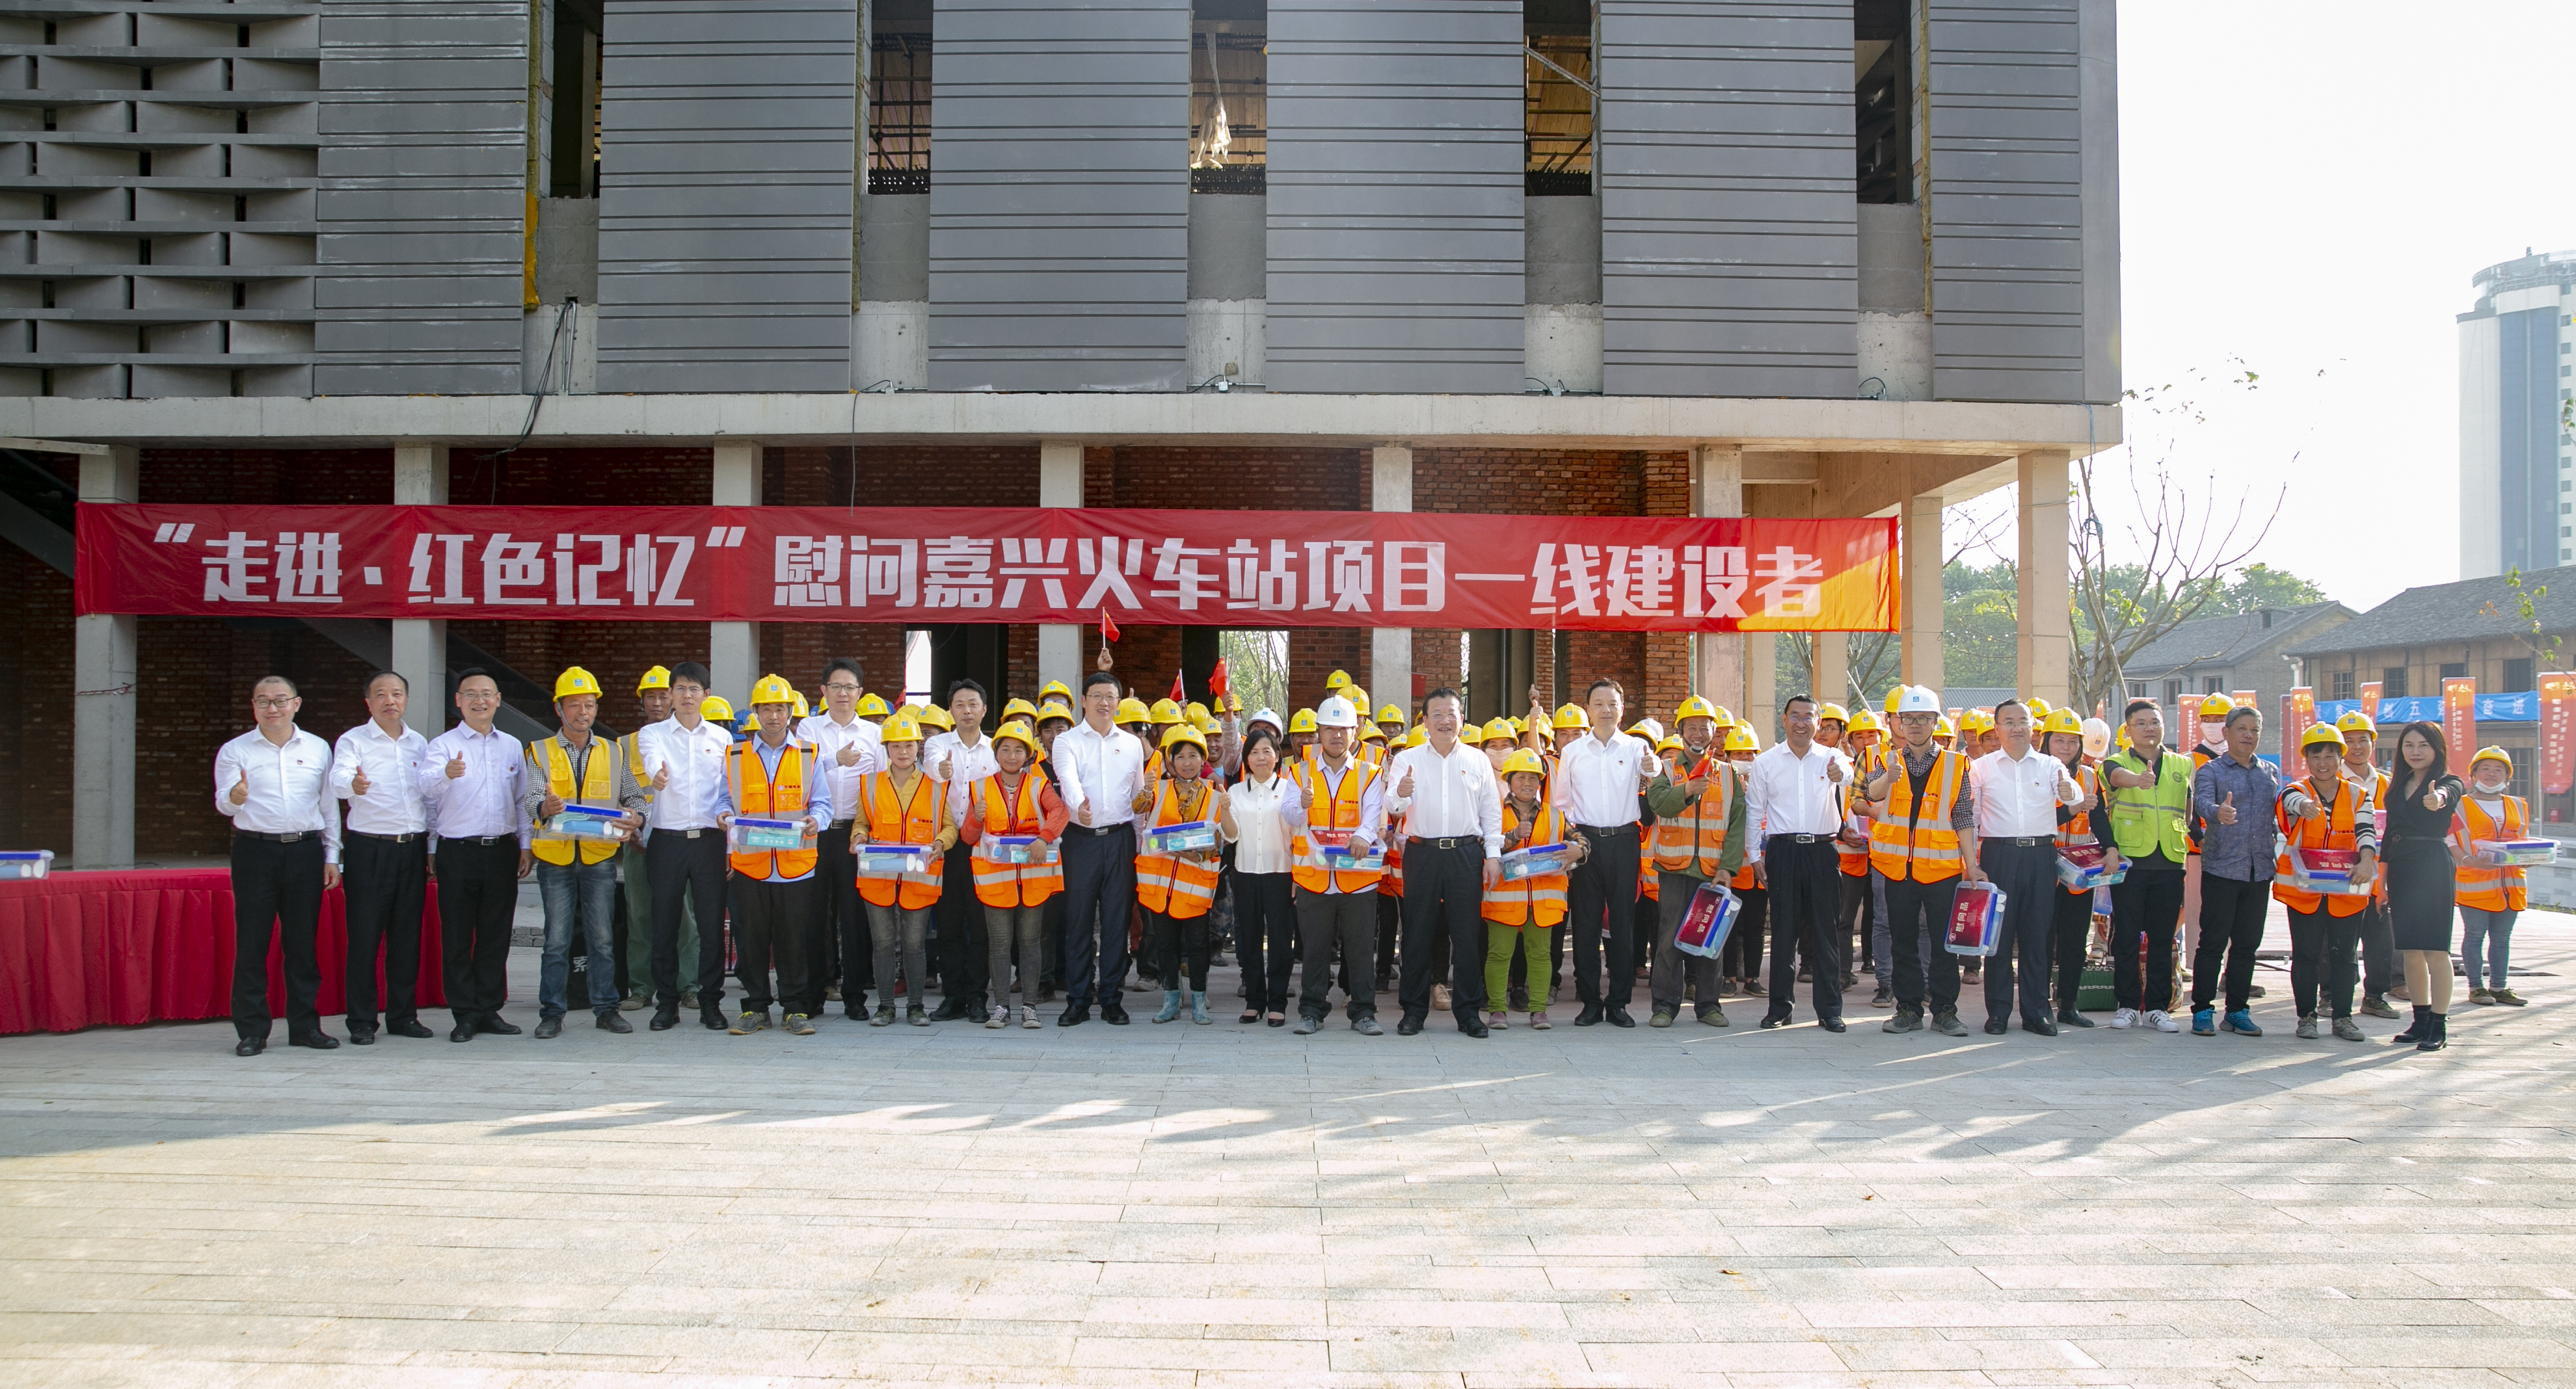 中国建筑在嘉兴火车站区域提升改造项目举办开放日活动